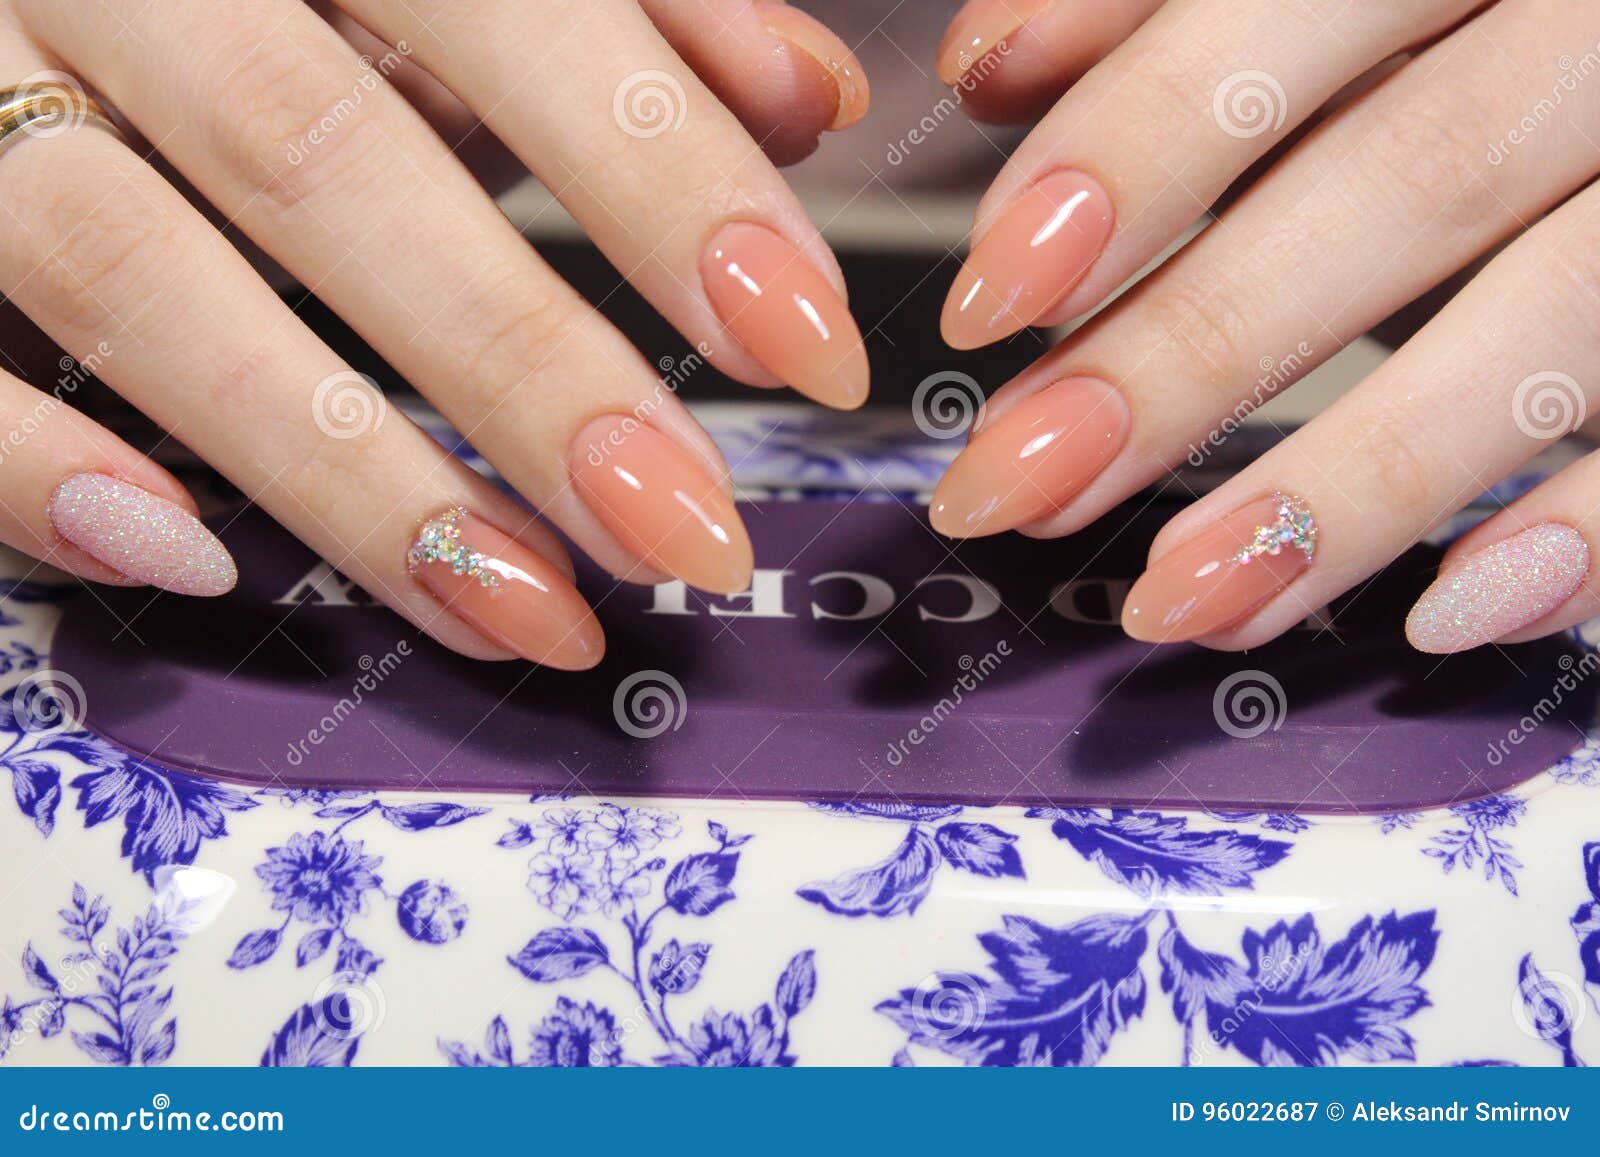 Hãy khám phá bộ sơn gel của Cosmolac Nails Fashion sản xuất tại Nga, màu số